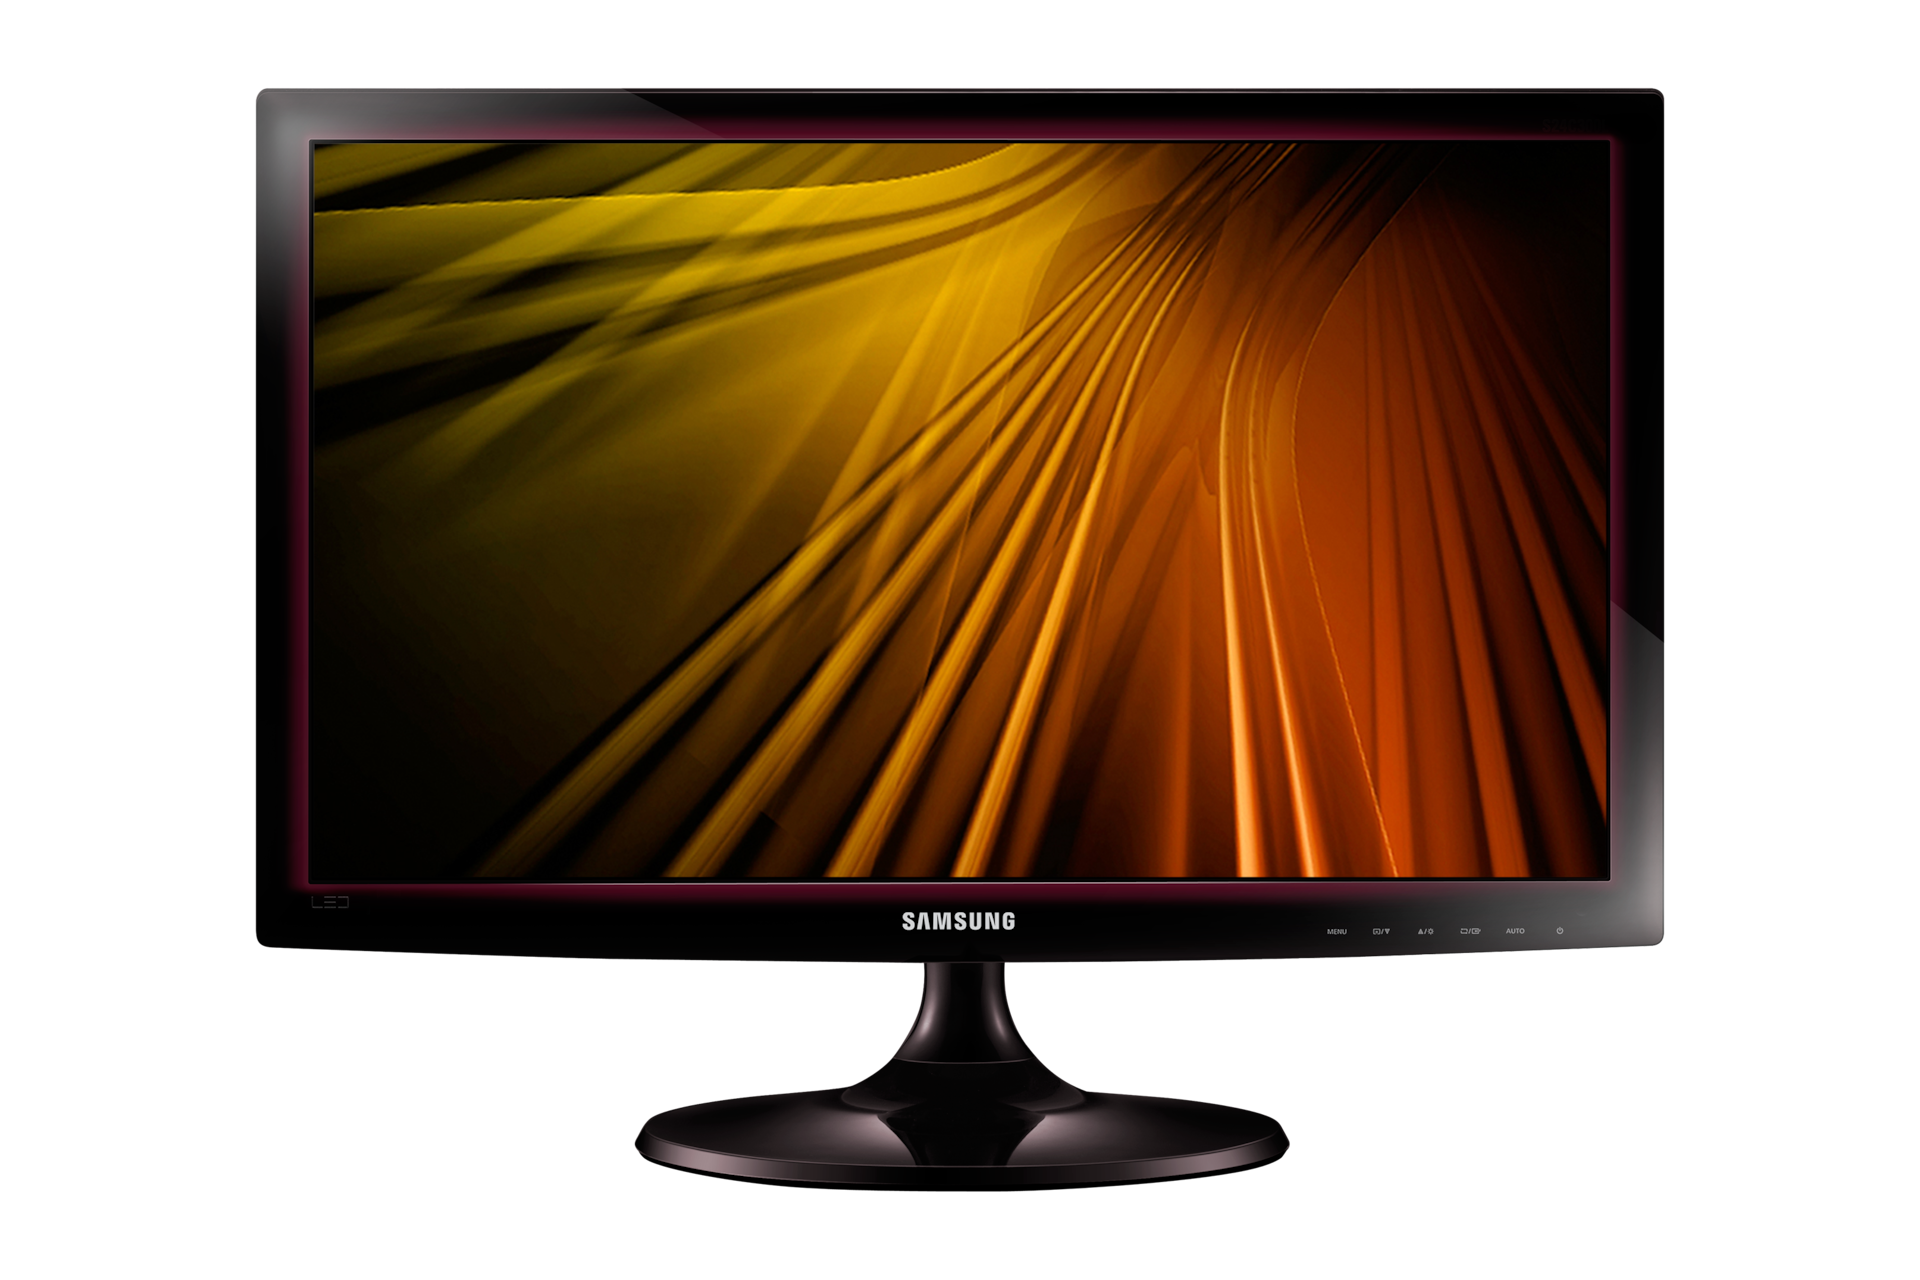 Xem trọn vẹn màn hình máy tính LED S20D300 và tìm hiểu công nghệ Siêu Tương Phản ấn tượng. Đặt mua chính hãng tại Samsung VN!